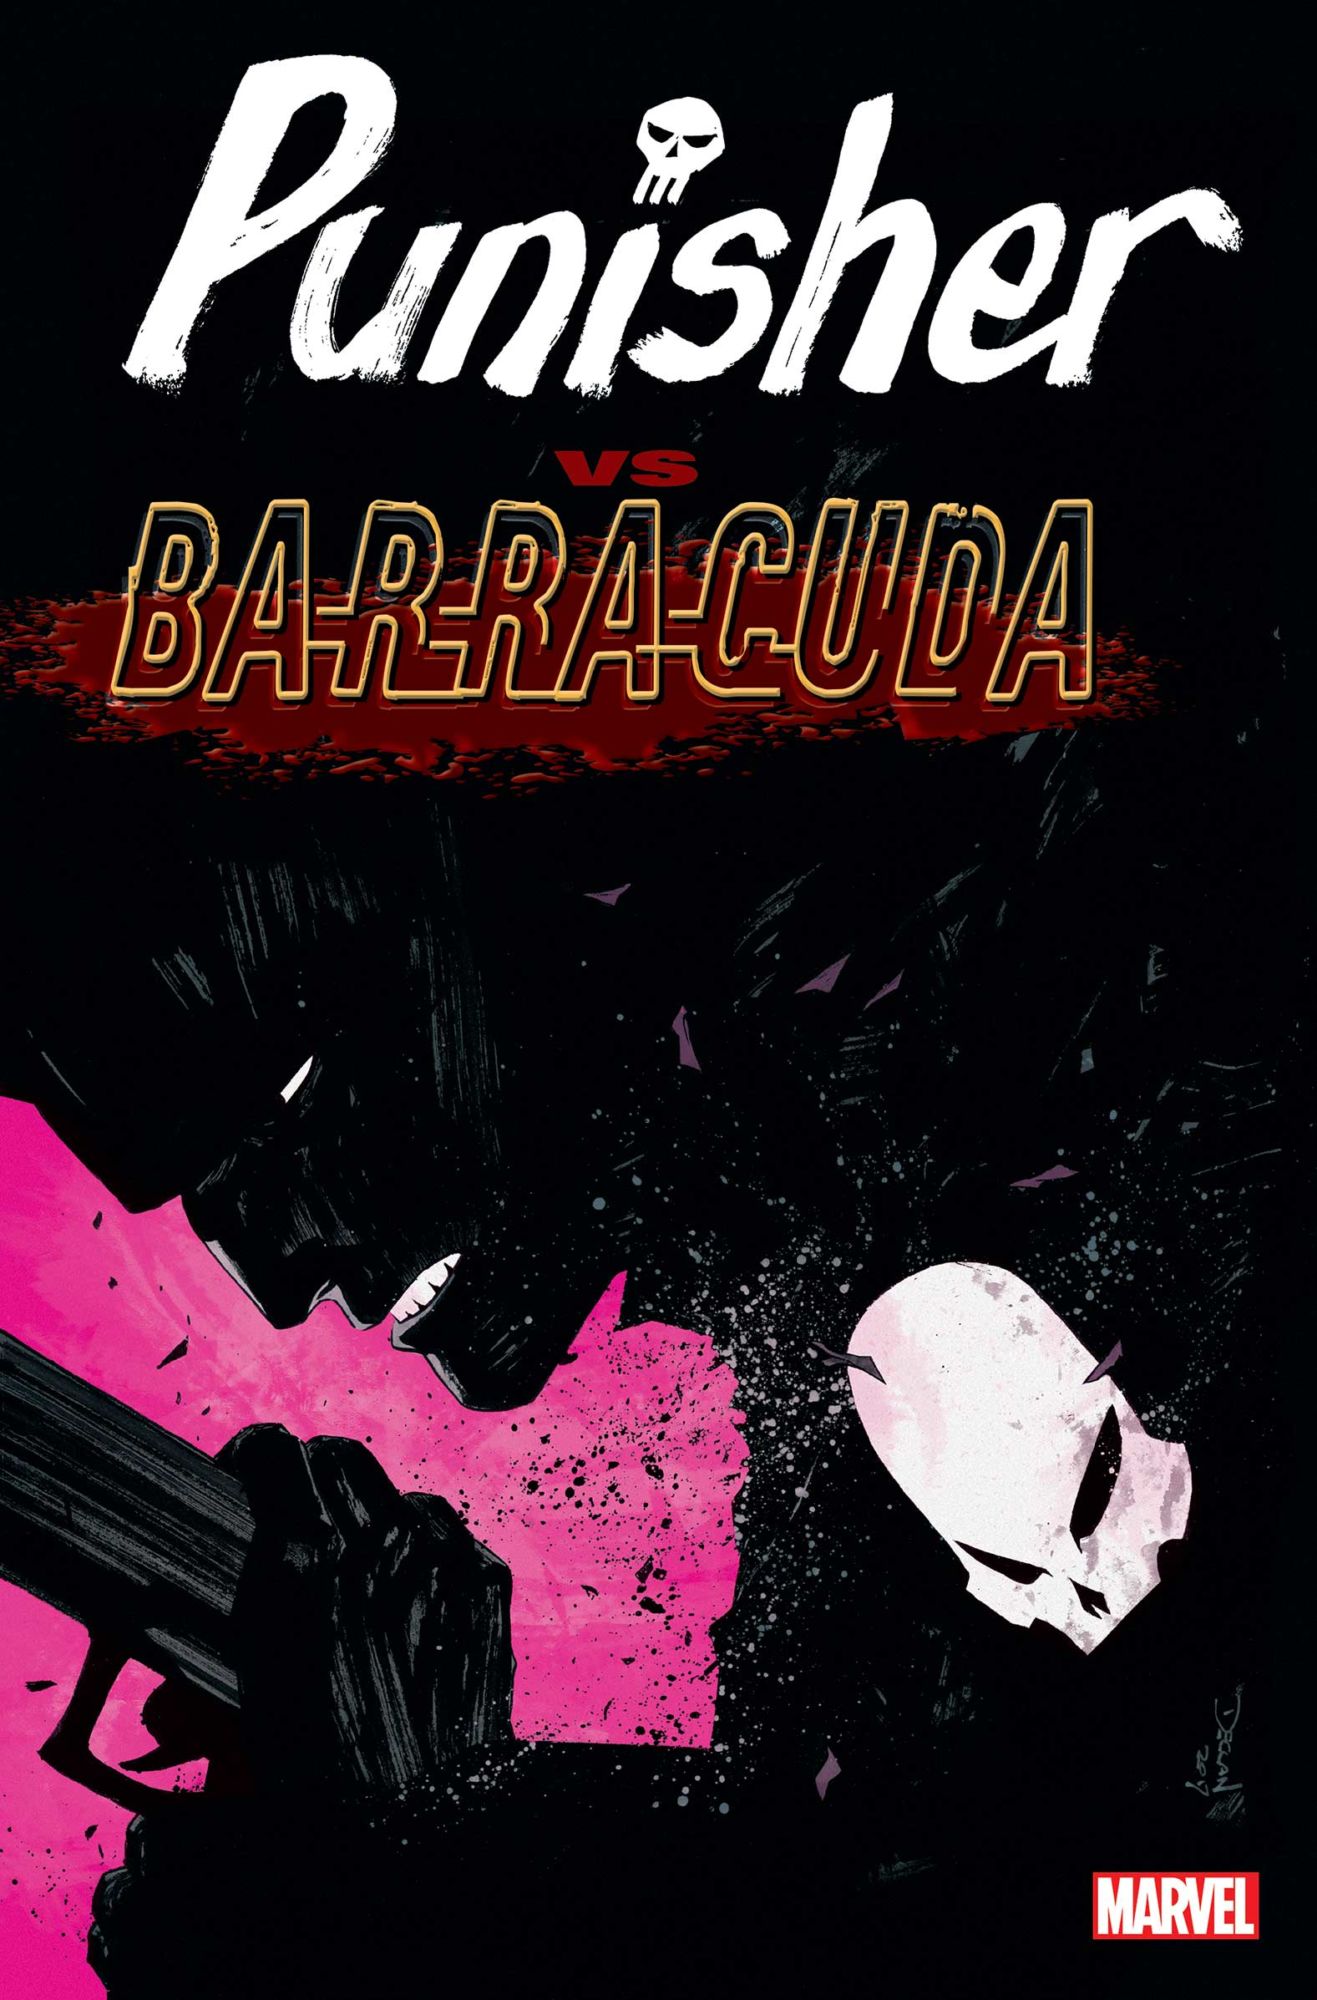 baracuda trainer fallout 4 english